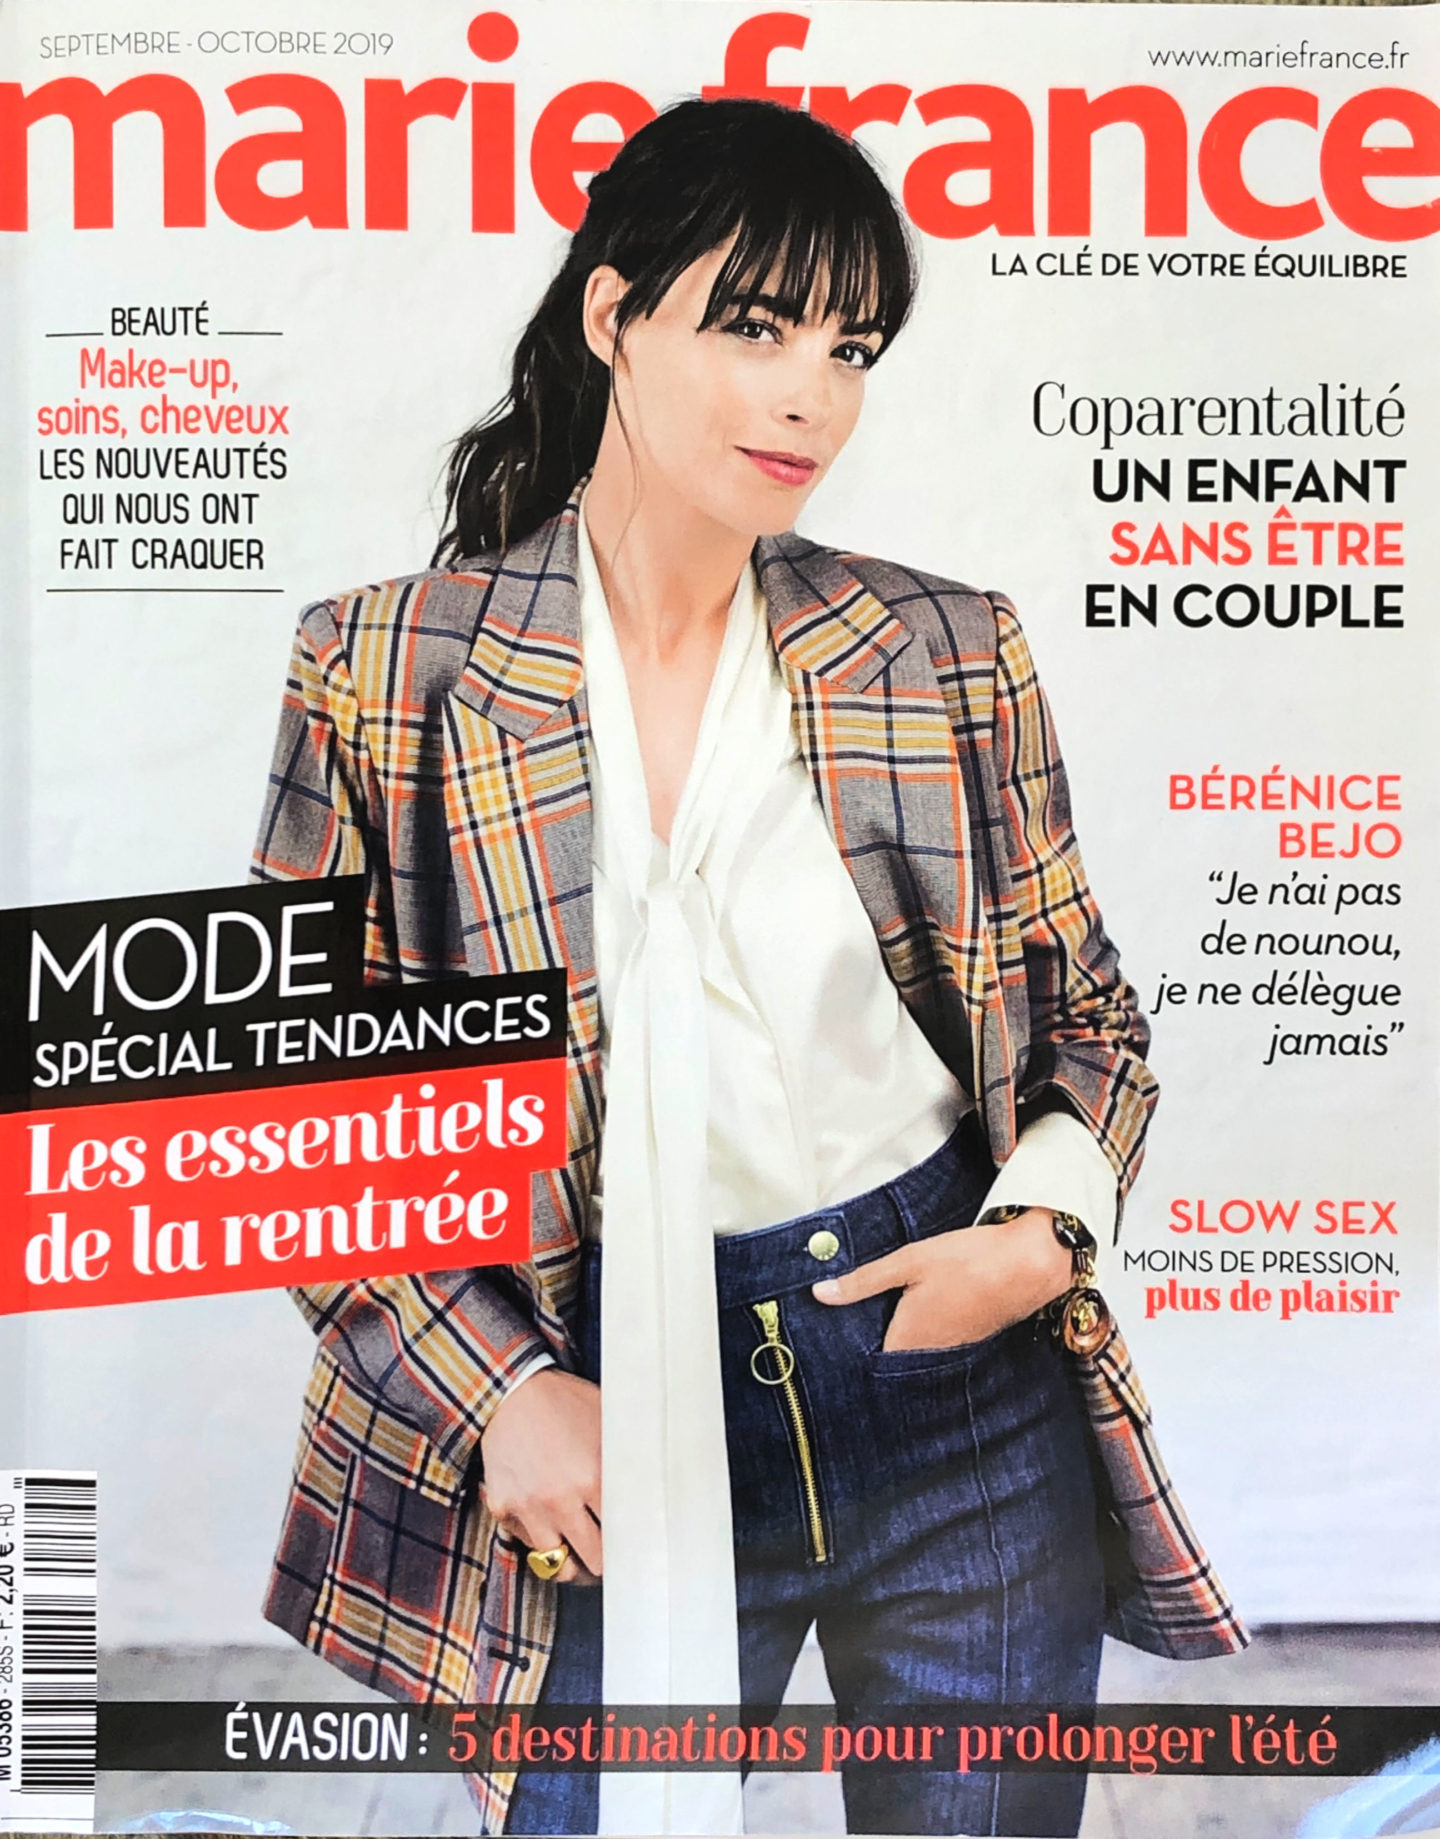 French Magazines - the check blazer